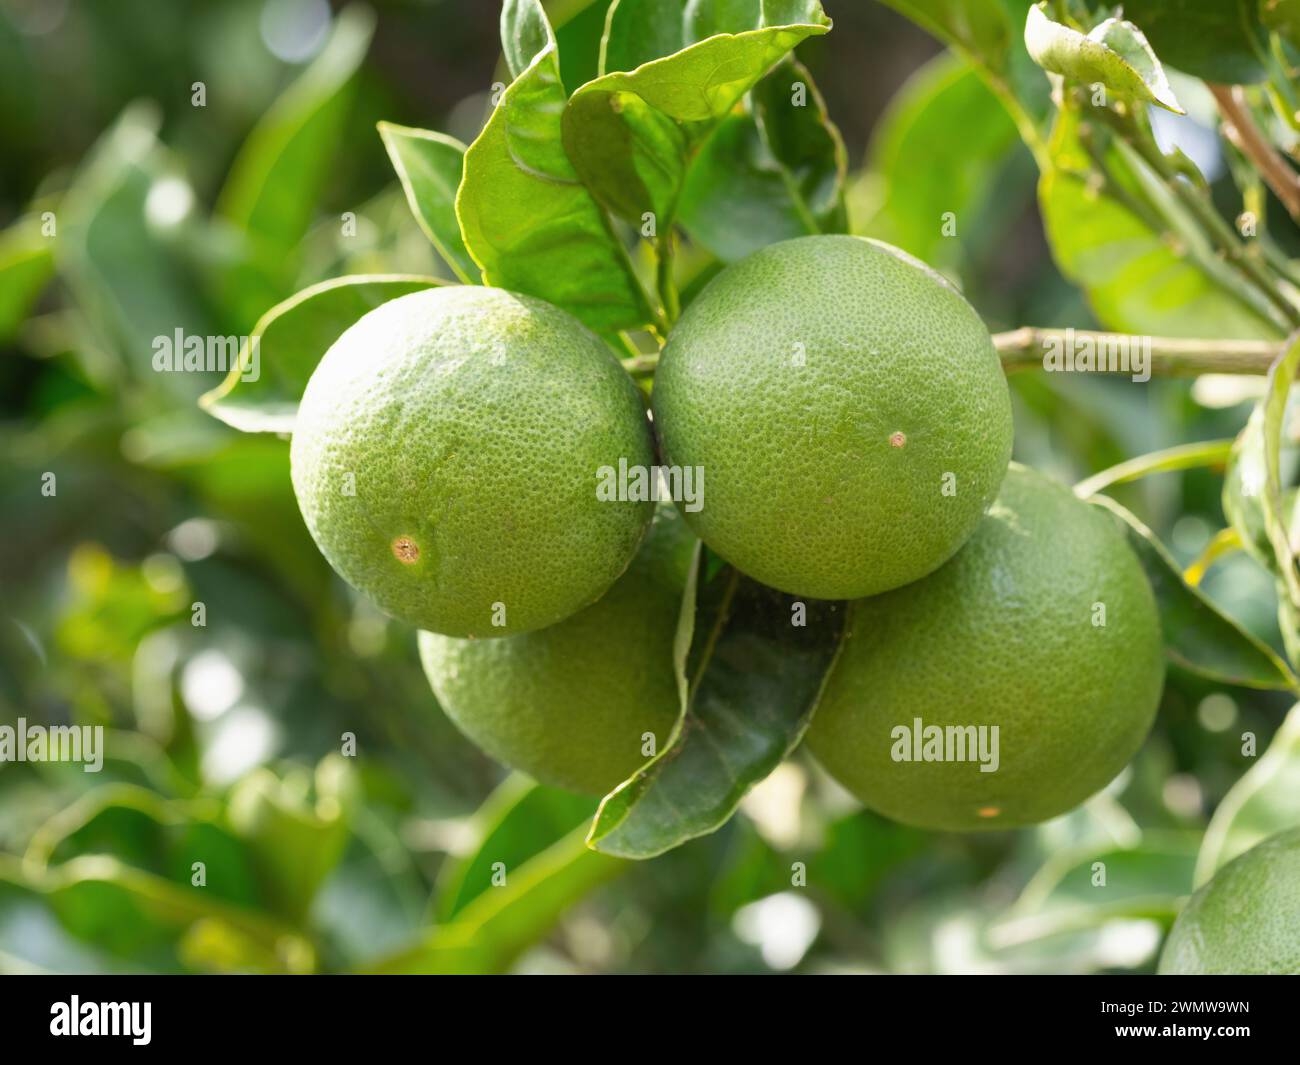 Grüne reife Limettenfrüchte (Citrus aurantifolia) wachsen auf Baumzweigen. Frisches Haufen von natürlichen Früchten, die im hausgemachten Garten wachsen. Nahaufnahme. Ökologischer Landbau, Stockfoto